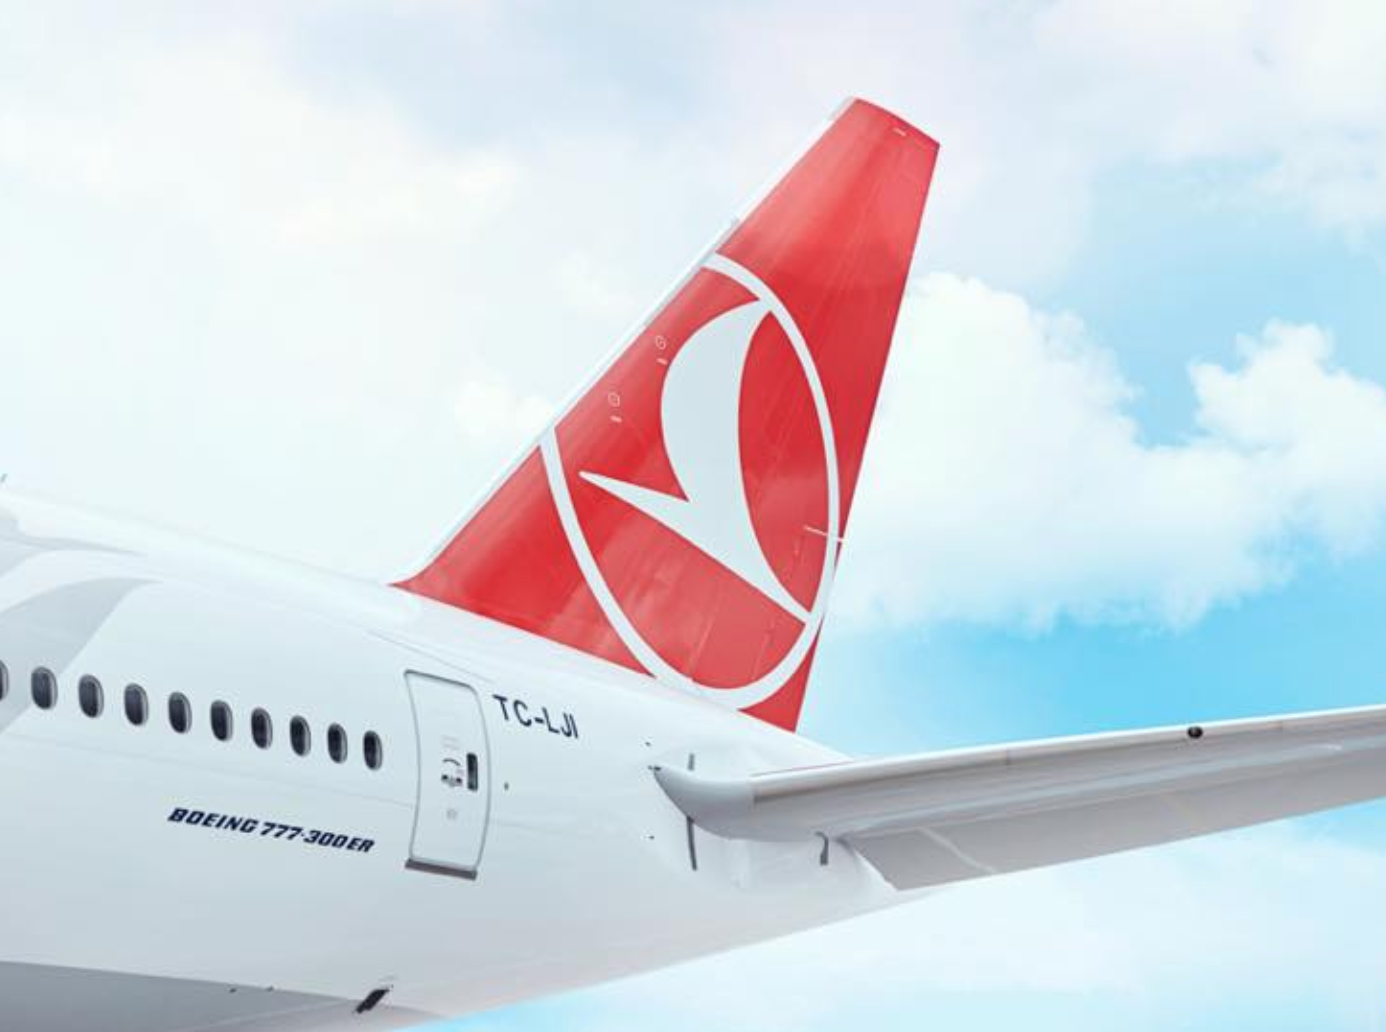 Turkish Airlines a transporté 72 millions de passagers en 2018 © Turkish Airlines